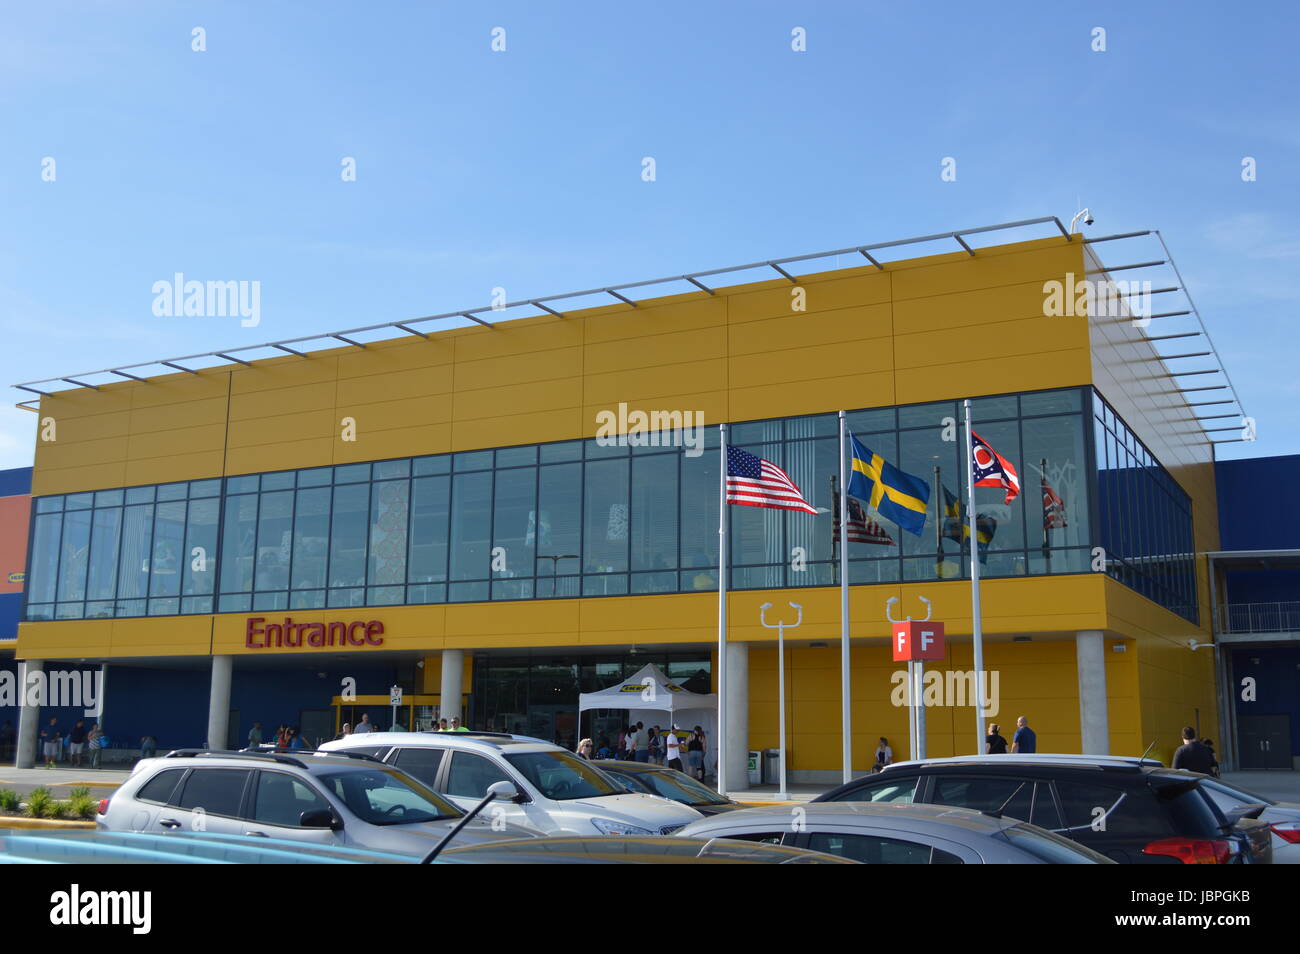 IKEA Banque D'Images